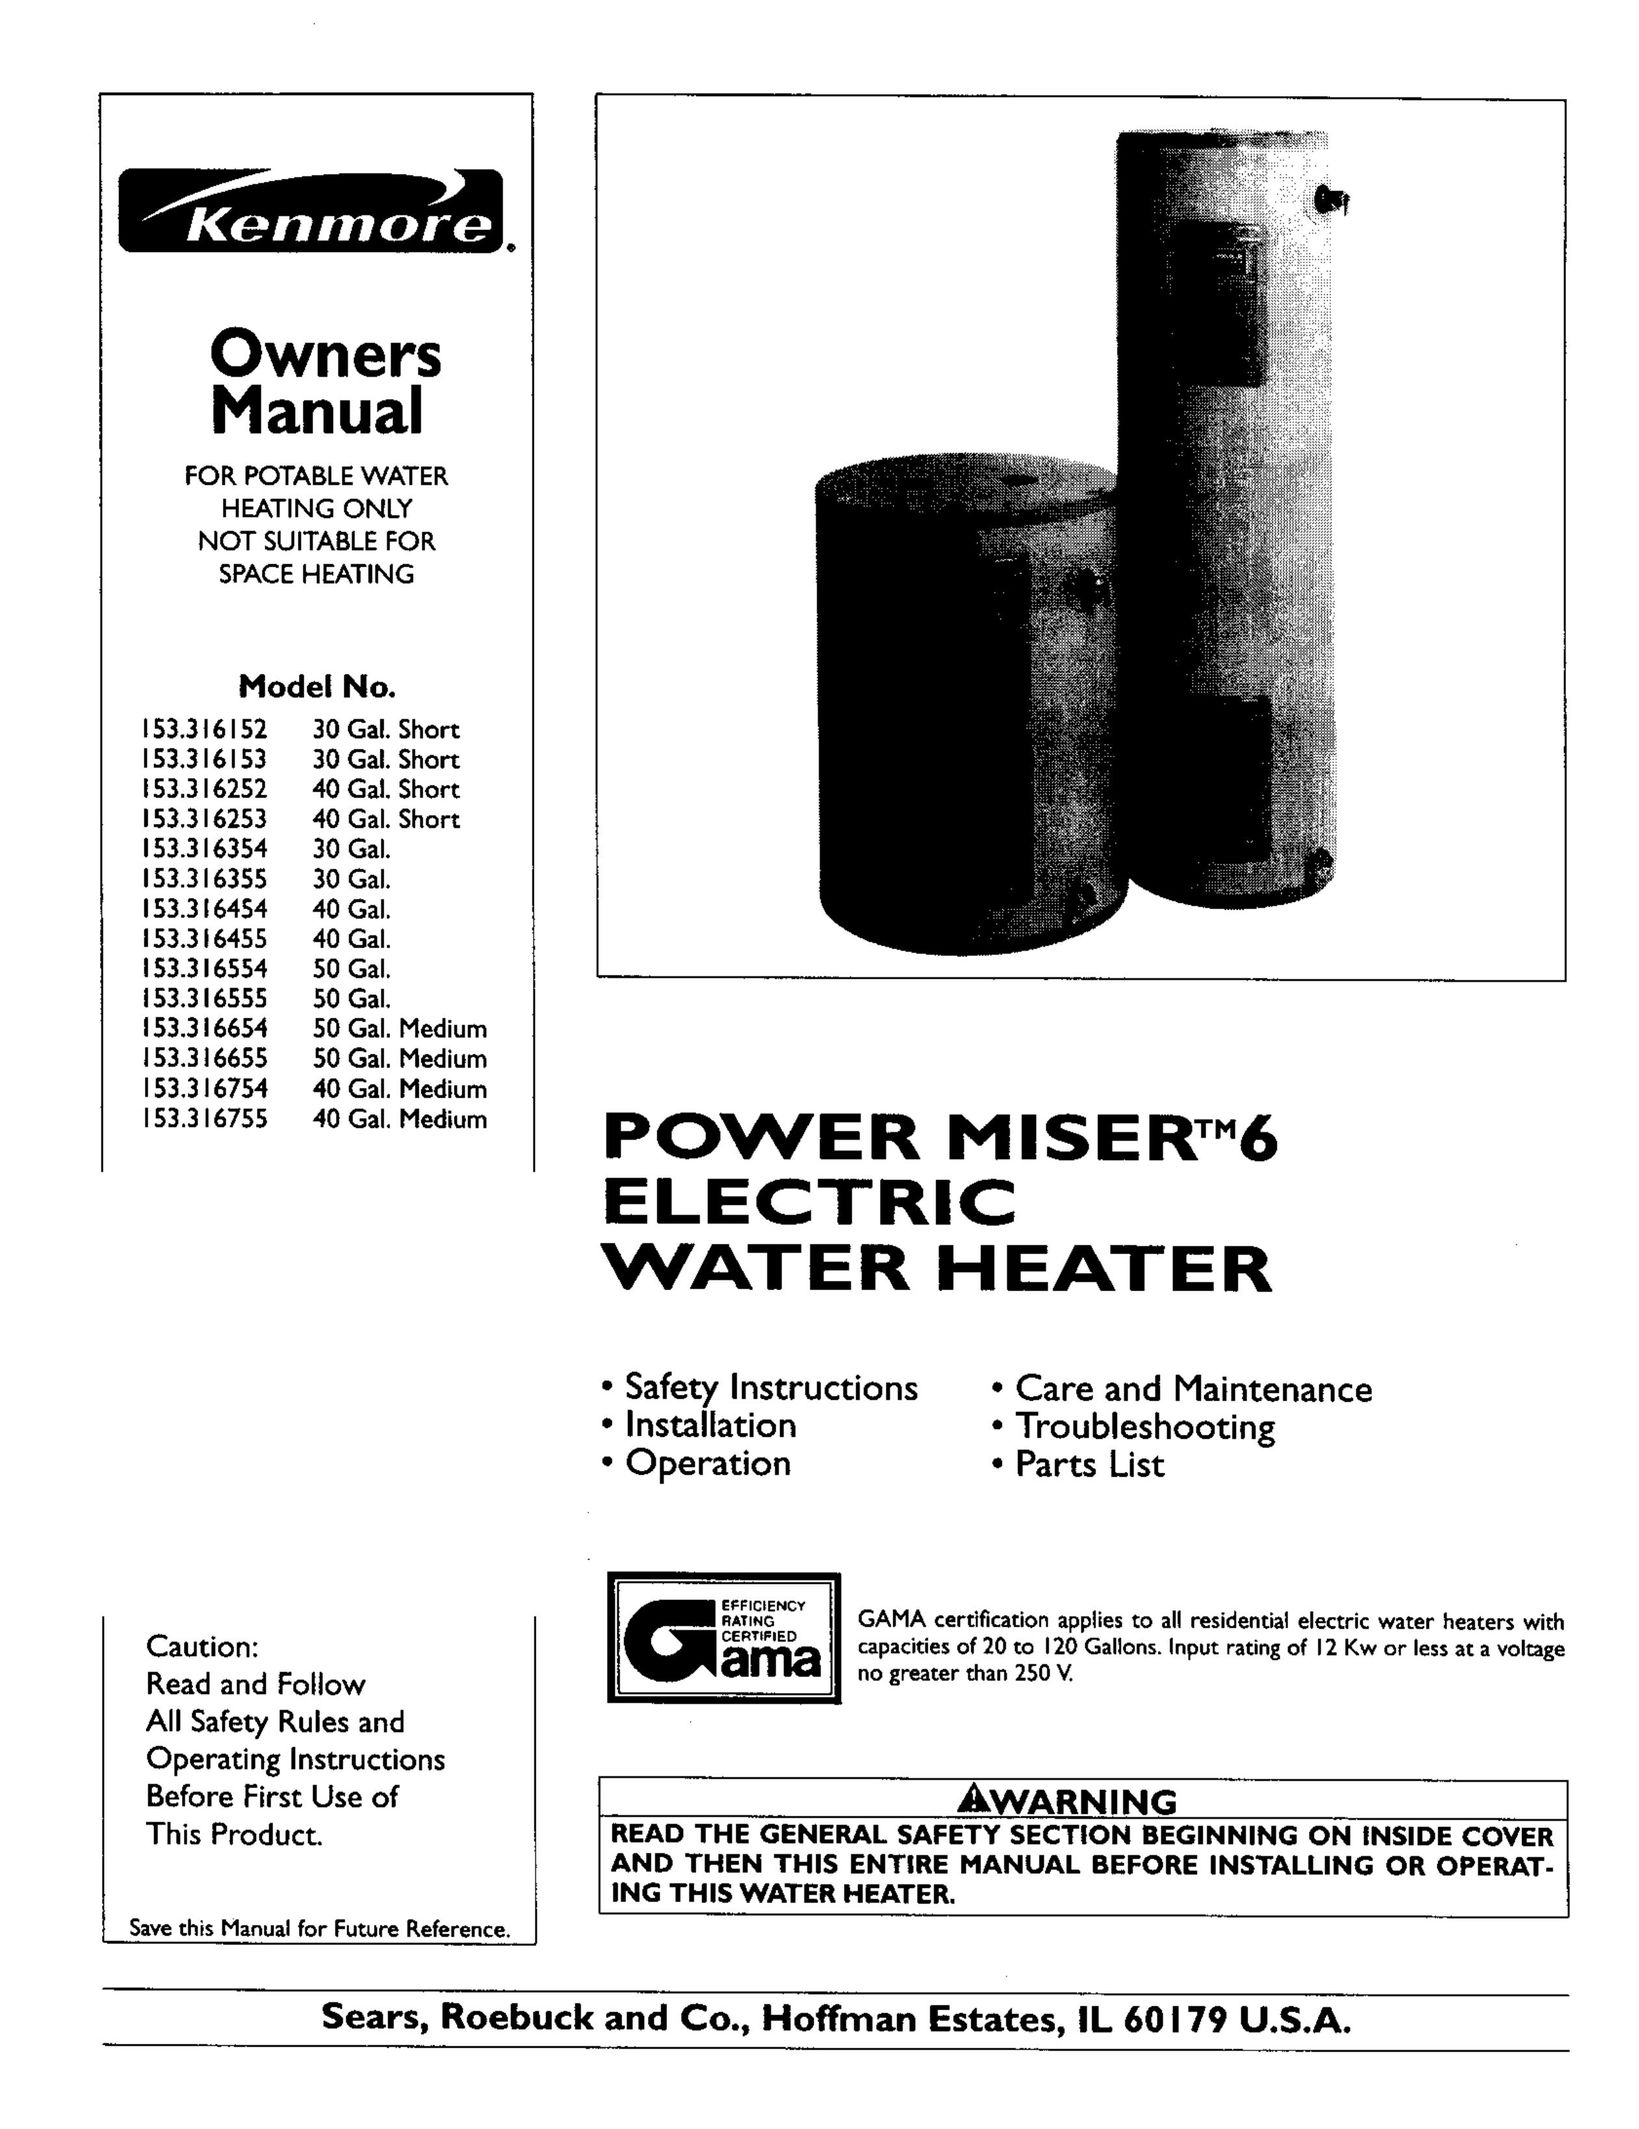 Kenmore 153.316554 Water Heater User Manual